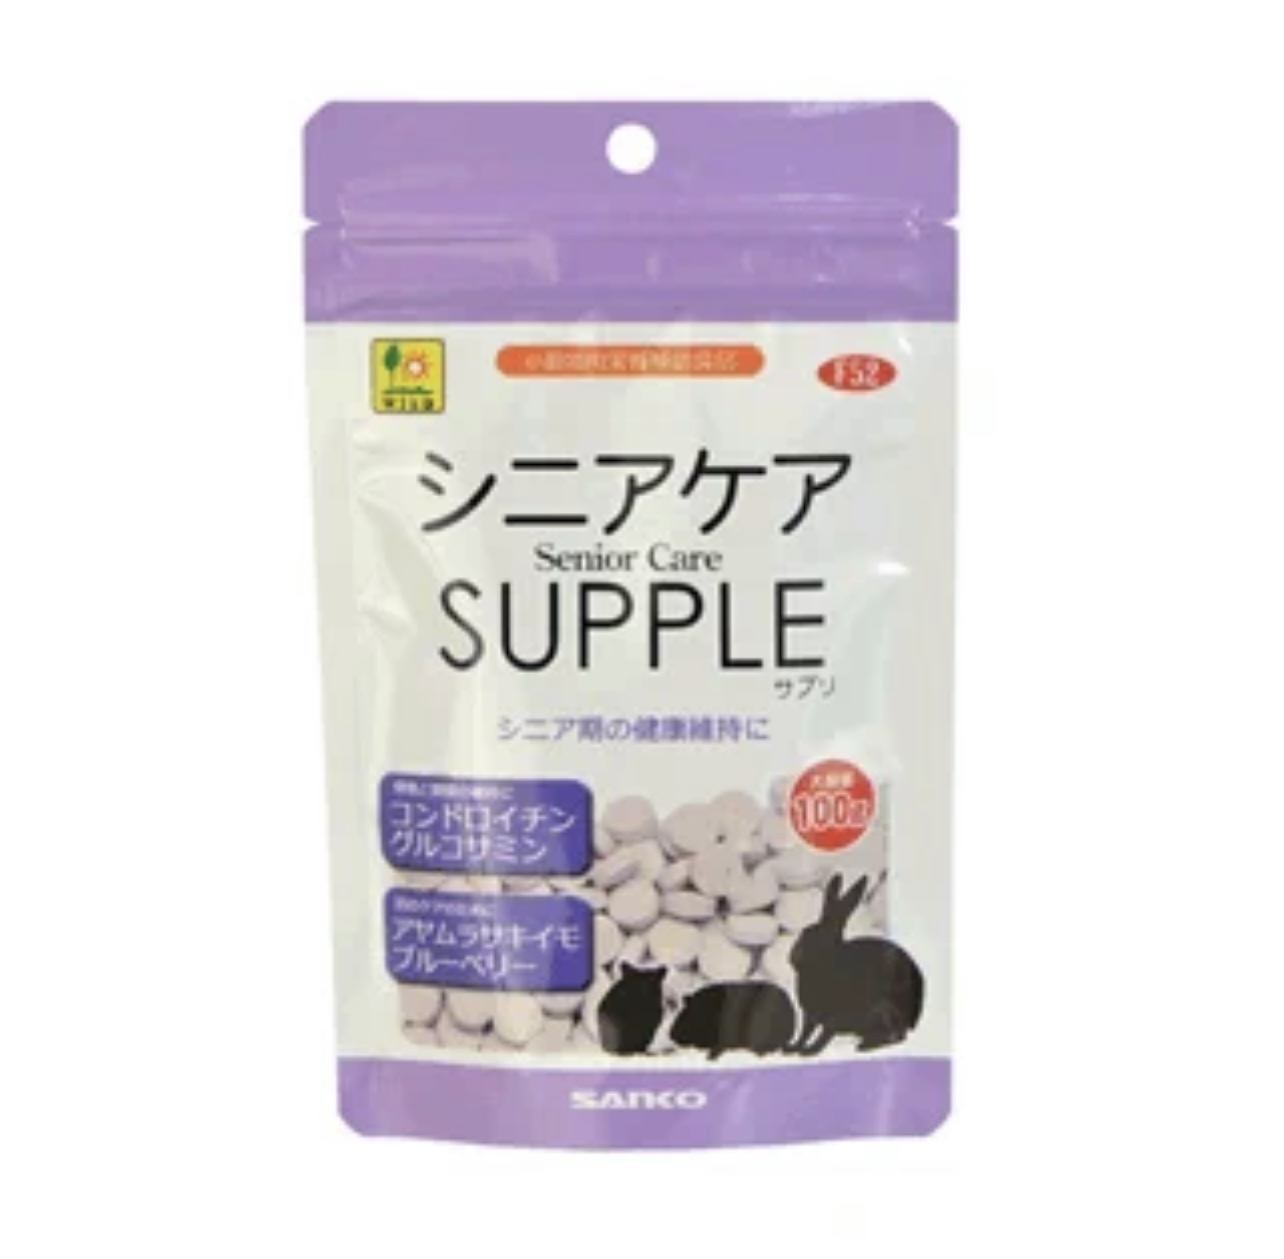 日本sanko品高兔子仓鼠龙猫营养关节护理保健品 奶片补钙F52 包邮